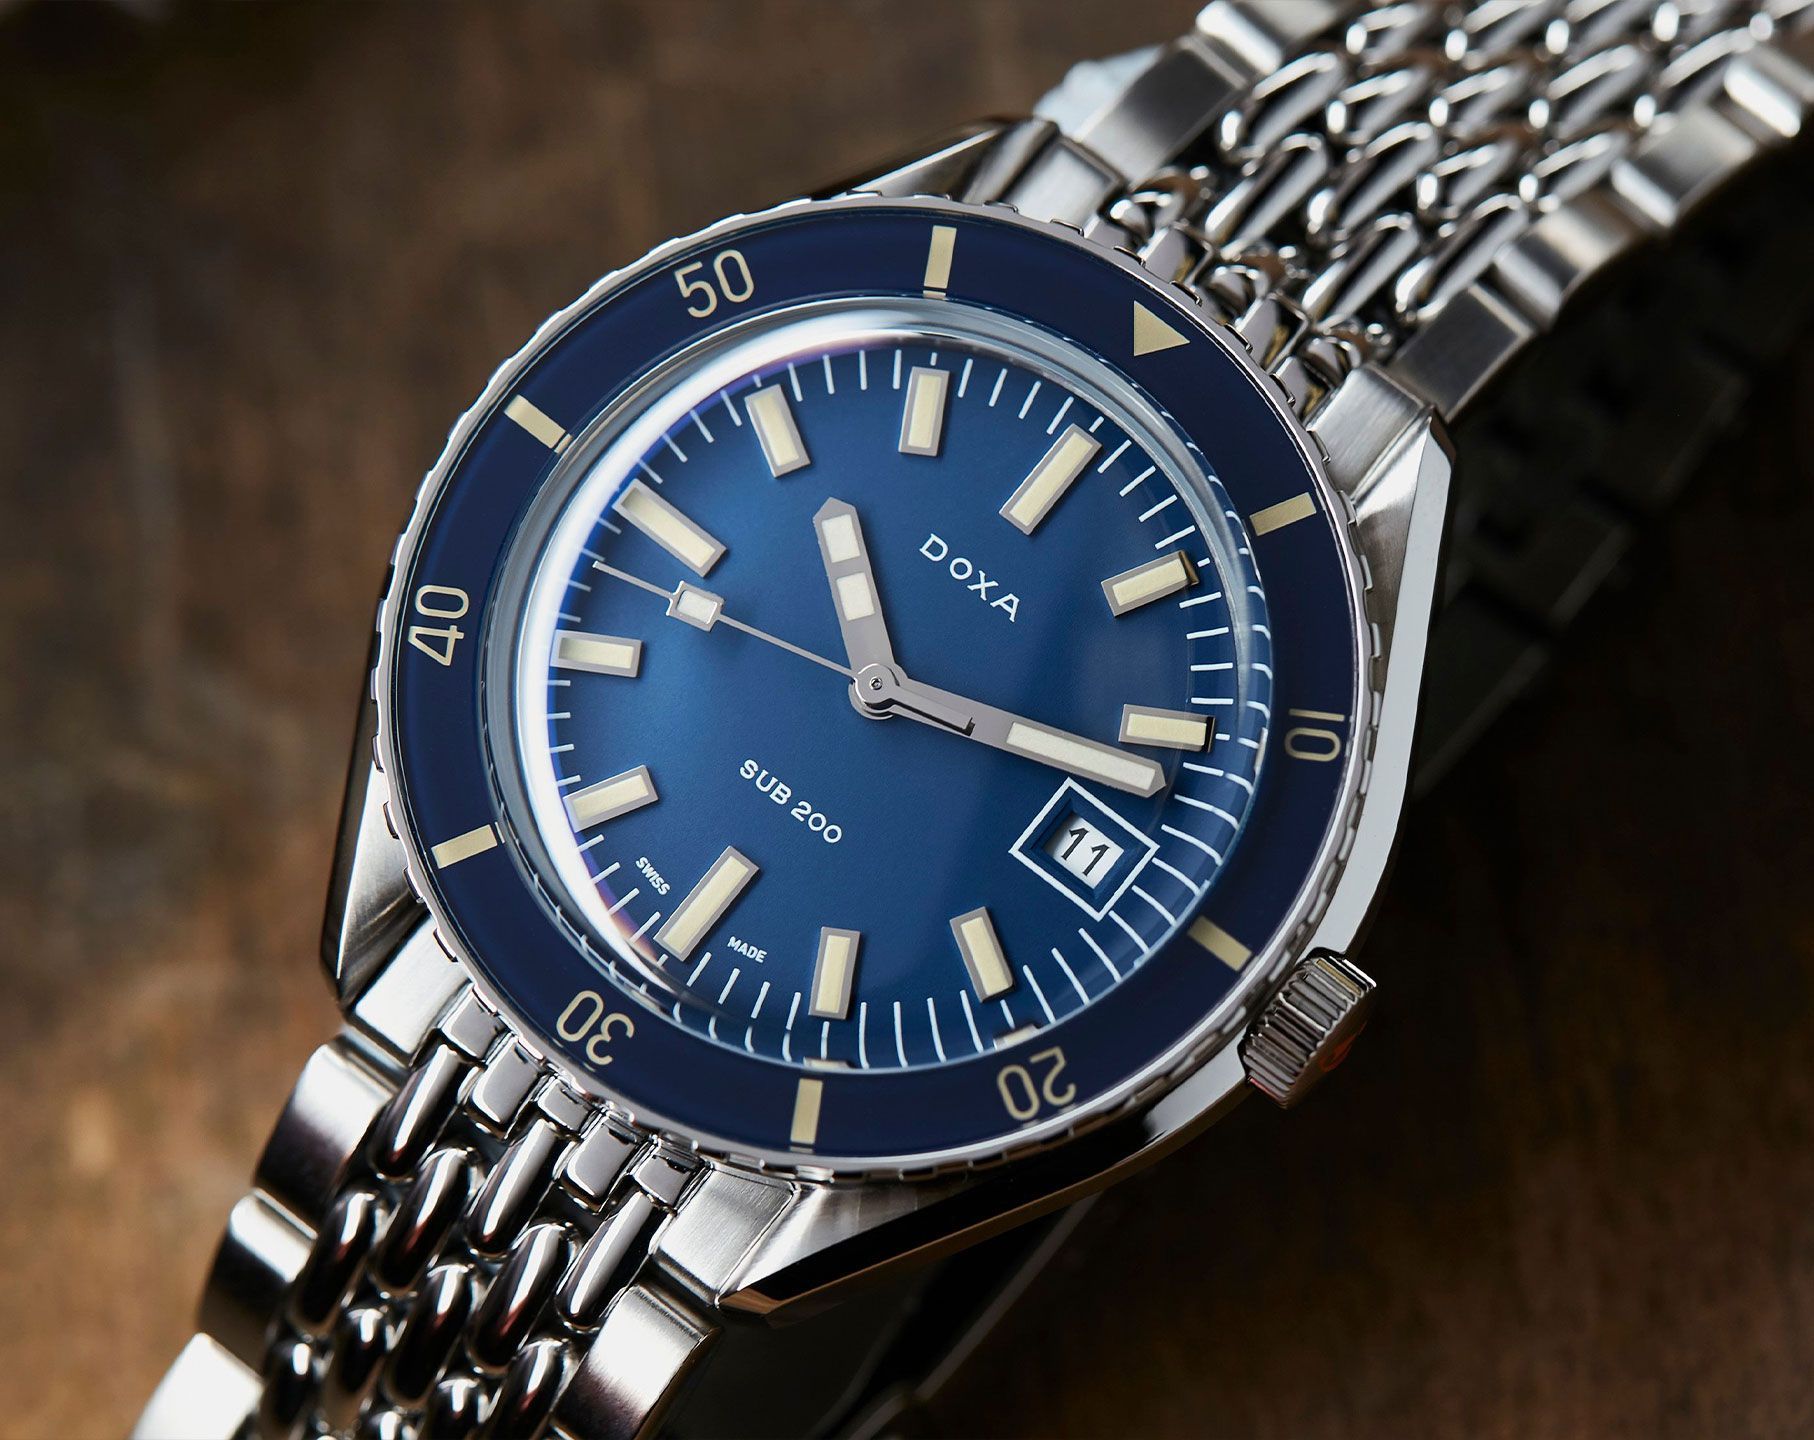 Doxa Caribbean 42 mm Watch in Blue Dial For Men - 5